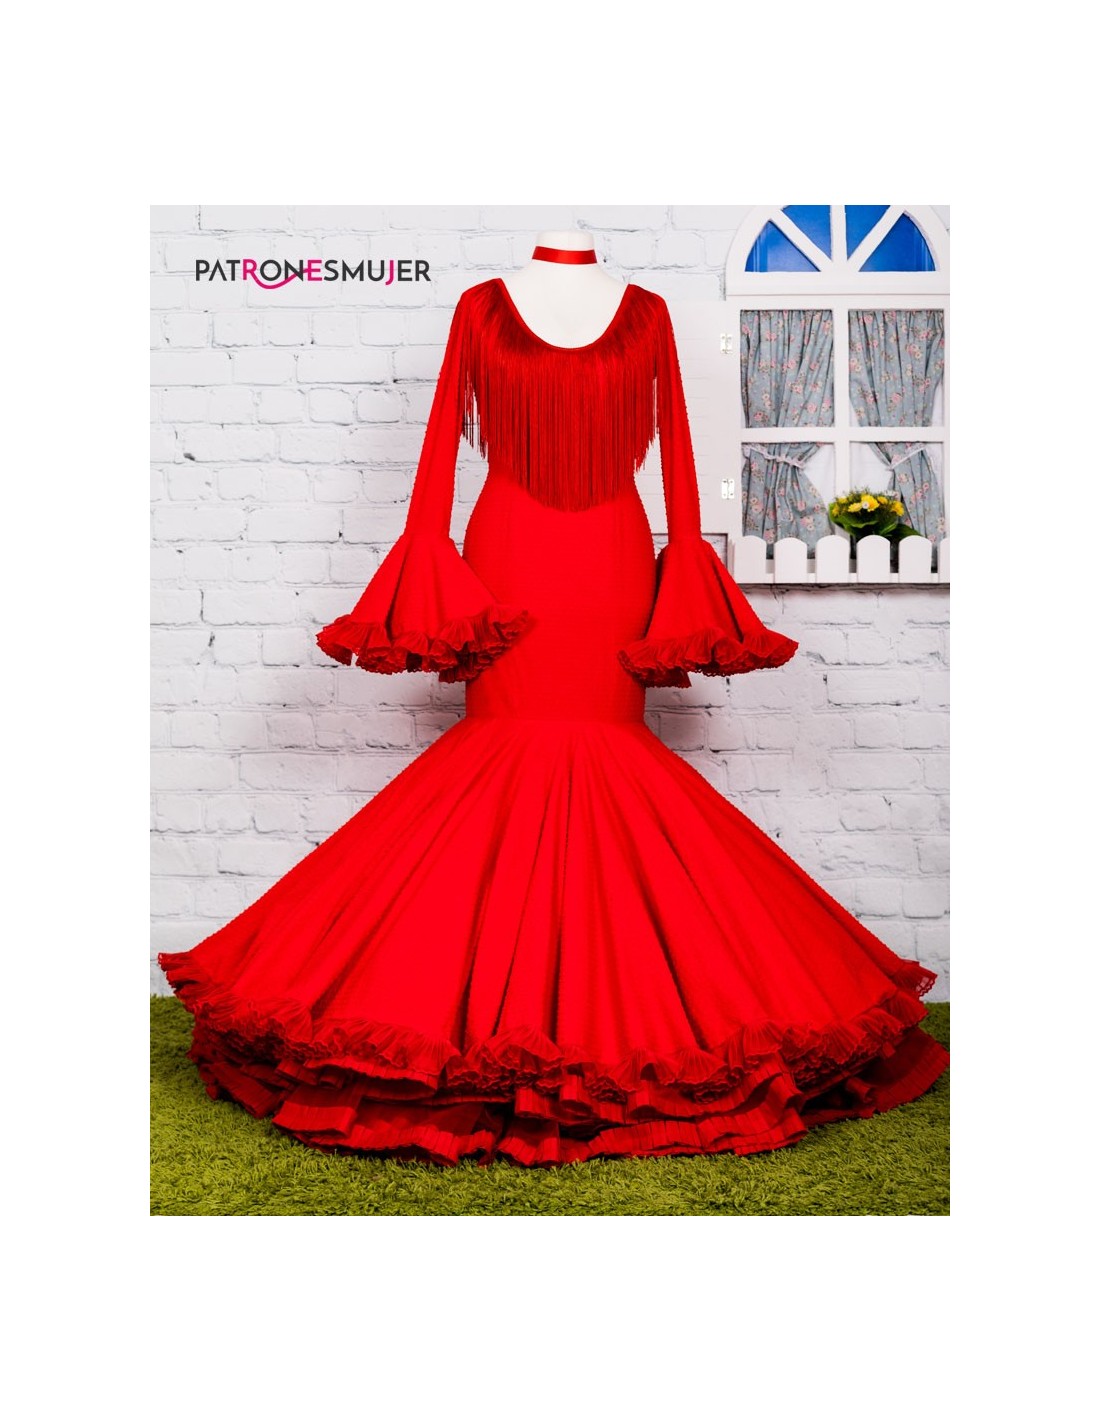 Descarga gratis el patrón de este precioso Vestido Flamenco